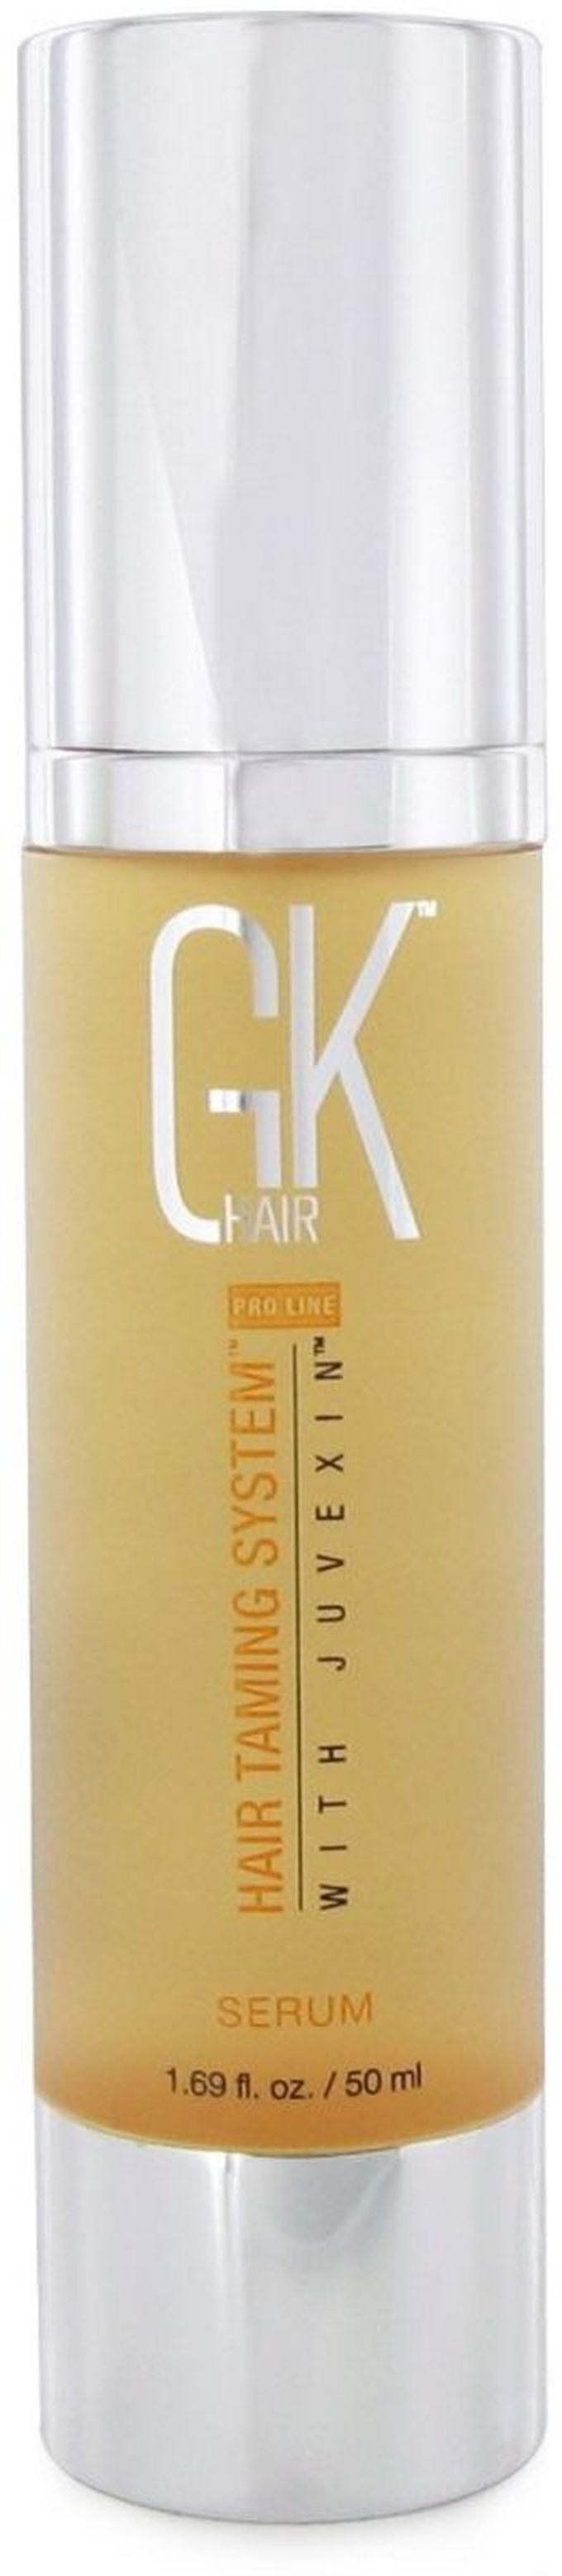 Gk Hair Taming Serum - 50 Ml